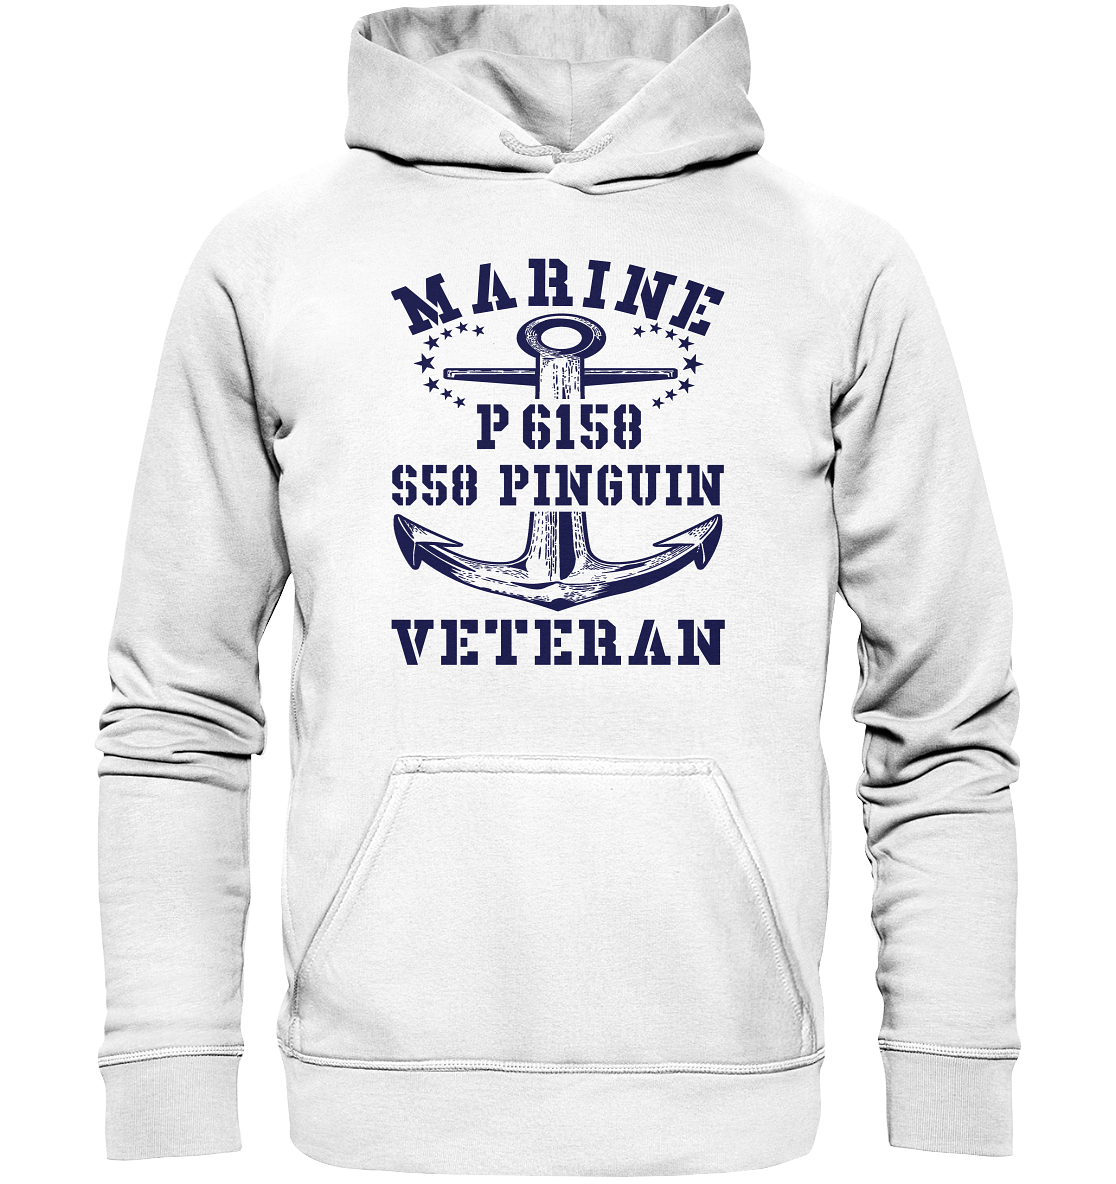 P6158 S58 PINGUIN Marine Veteran - Basic Unisex Hoodie